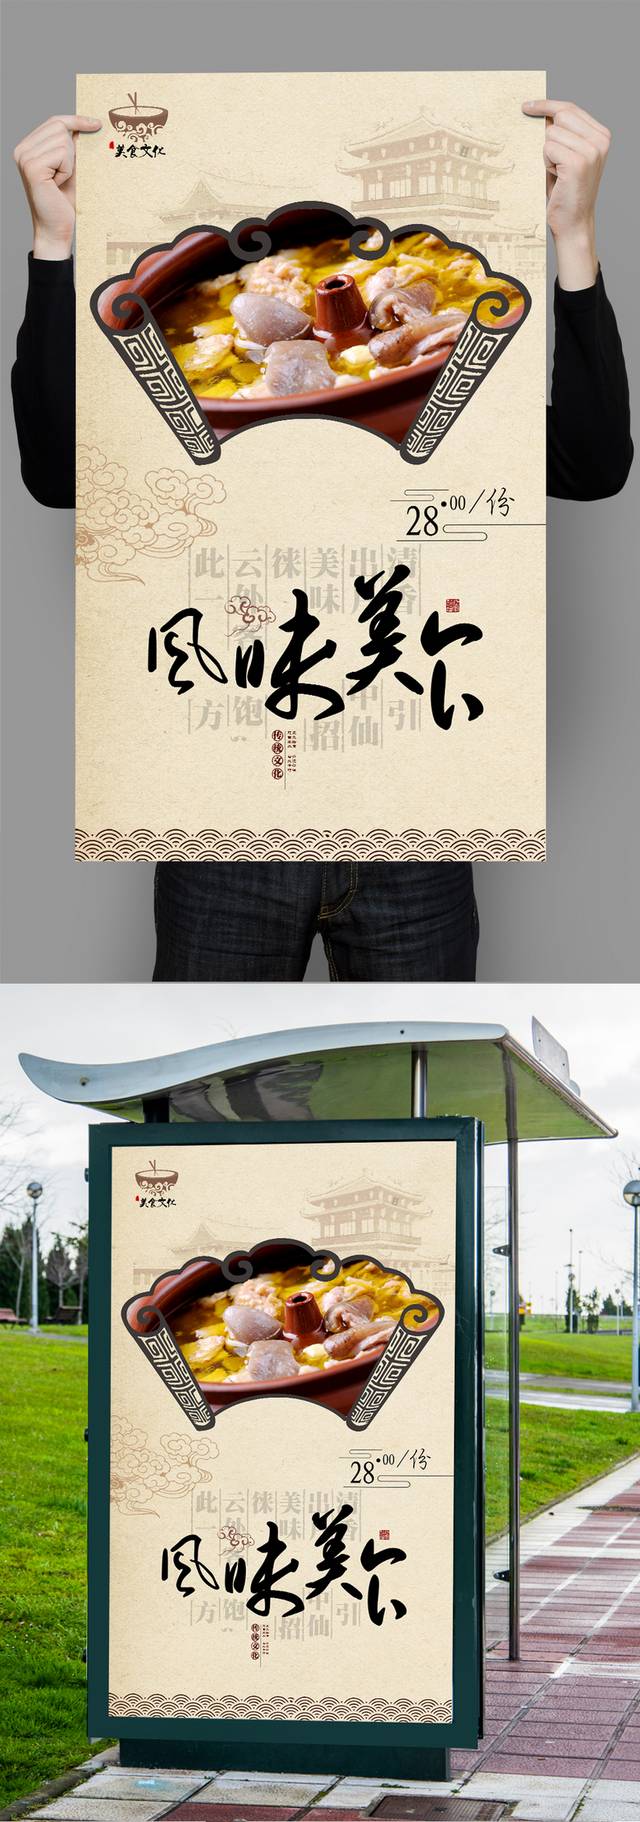 汽锅鸡美食宣传海报设计